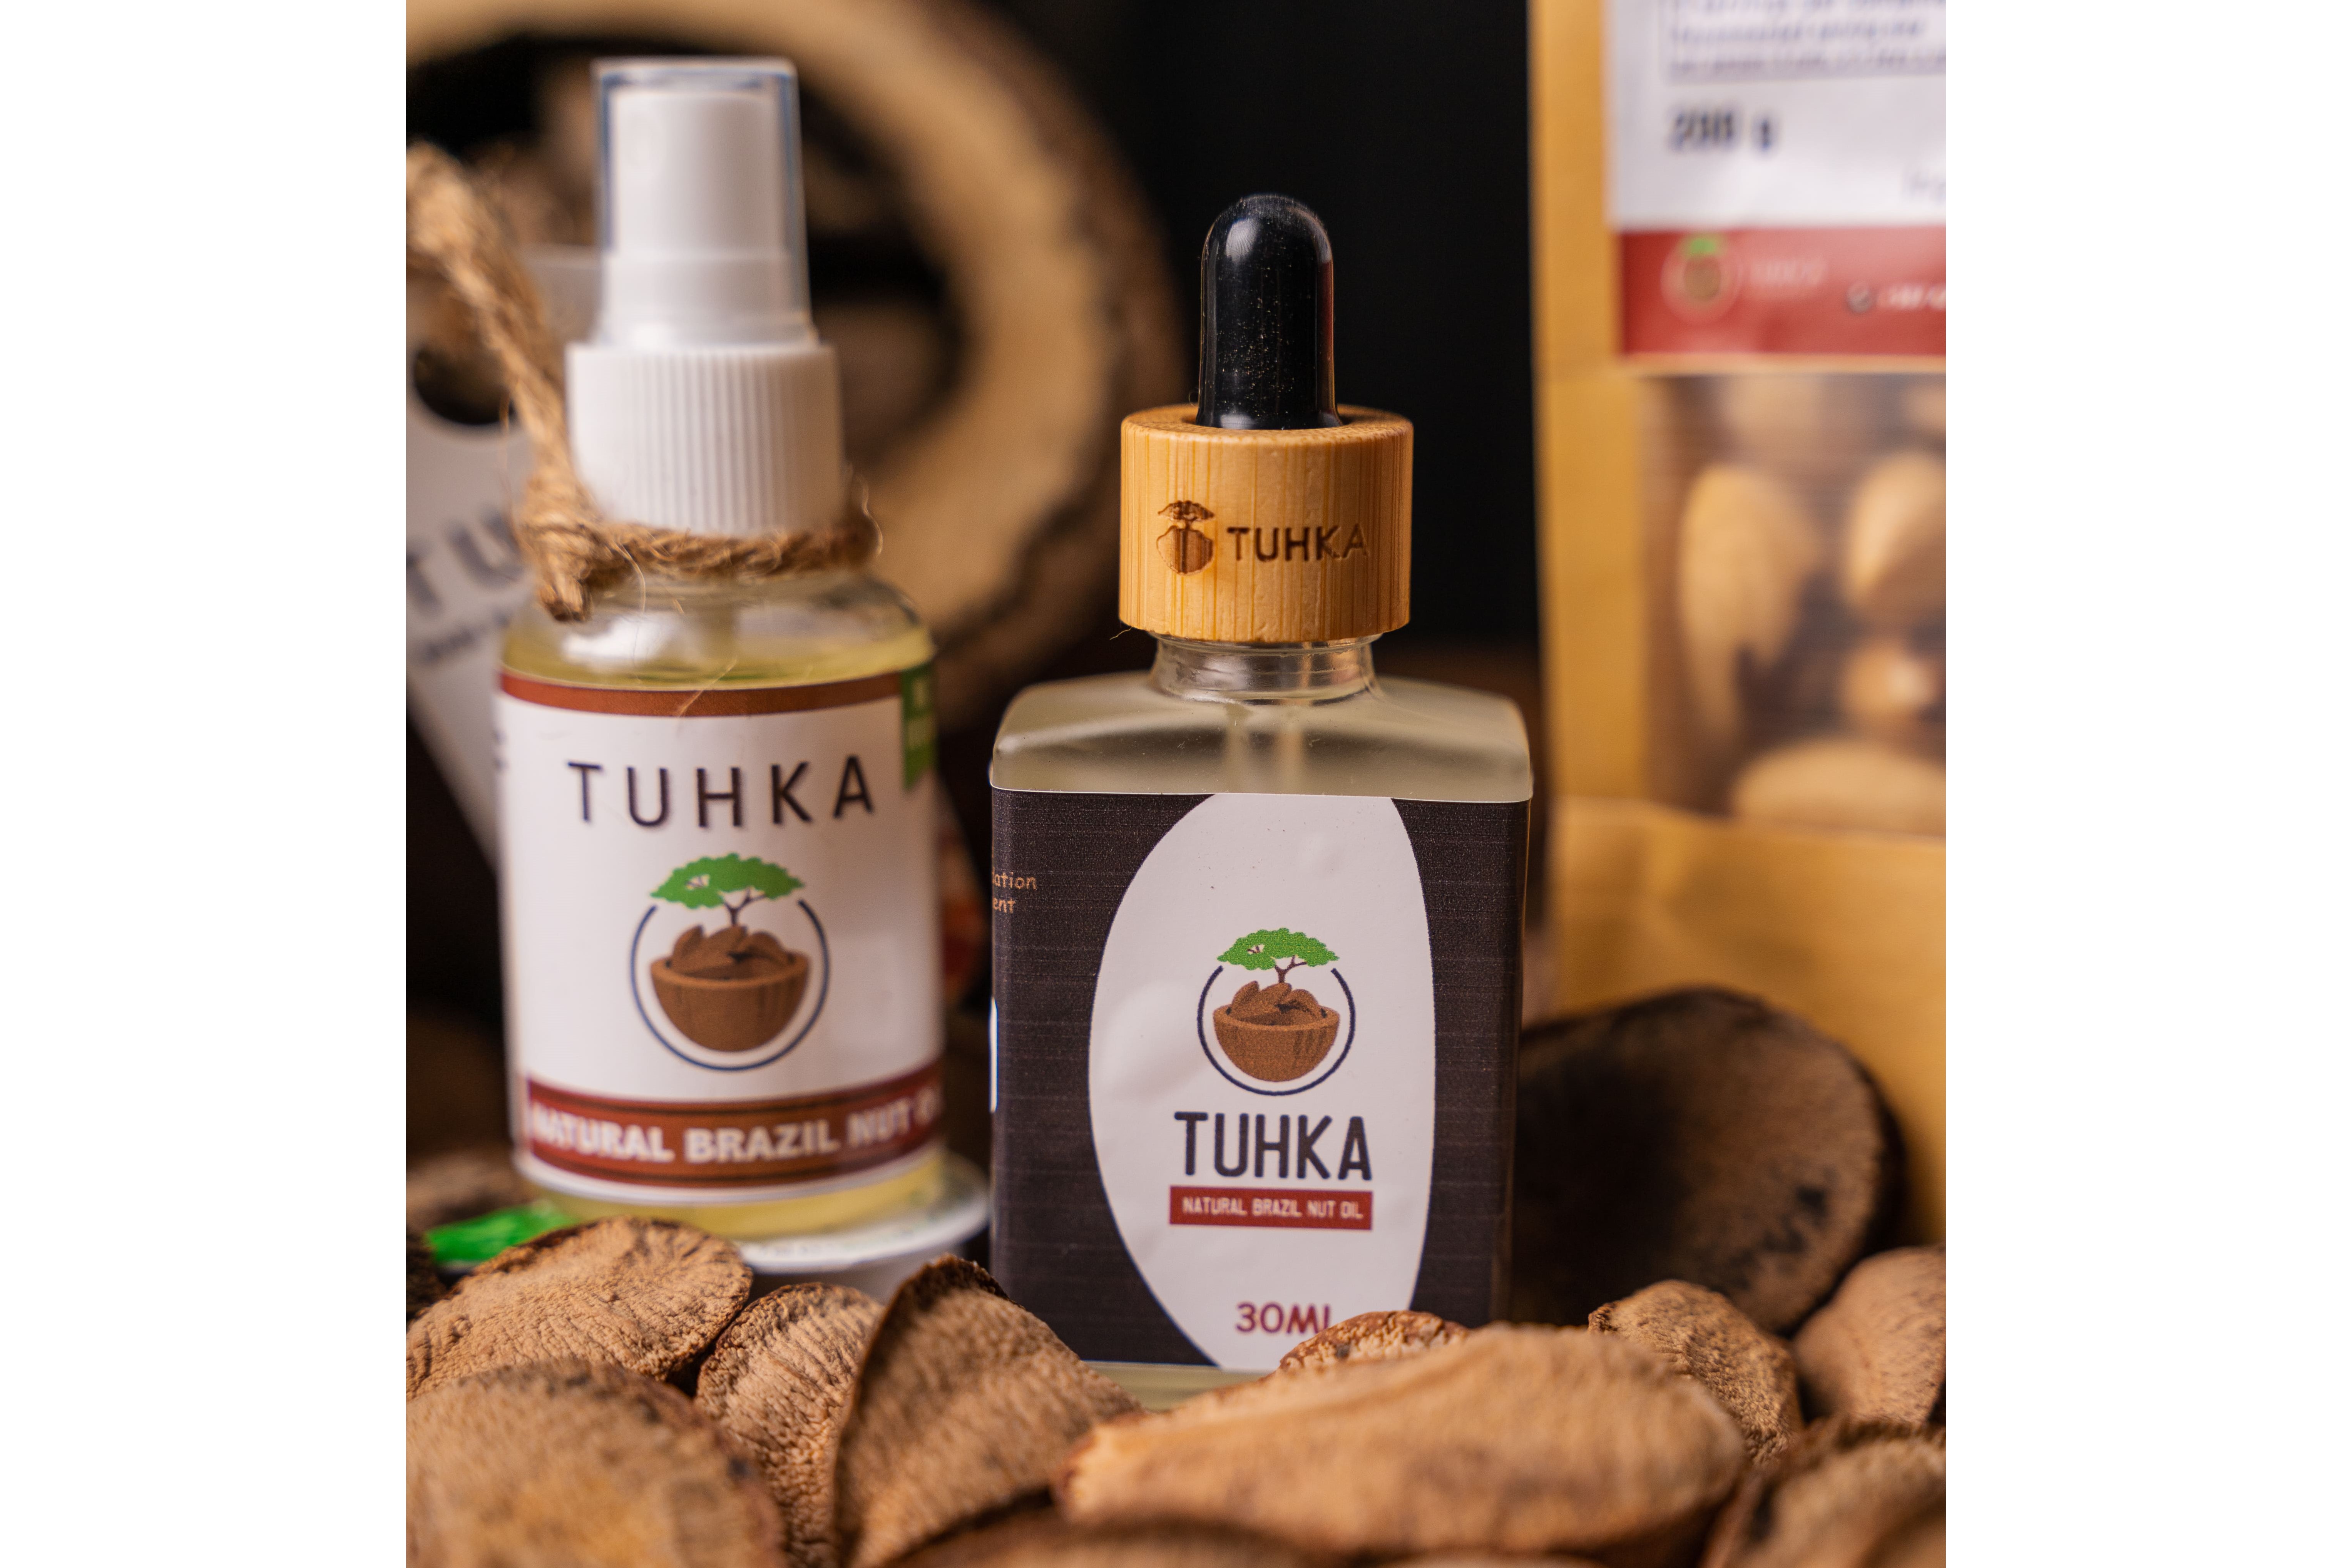 Our beautiful Tuhka oil...